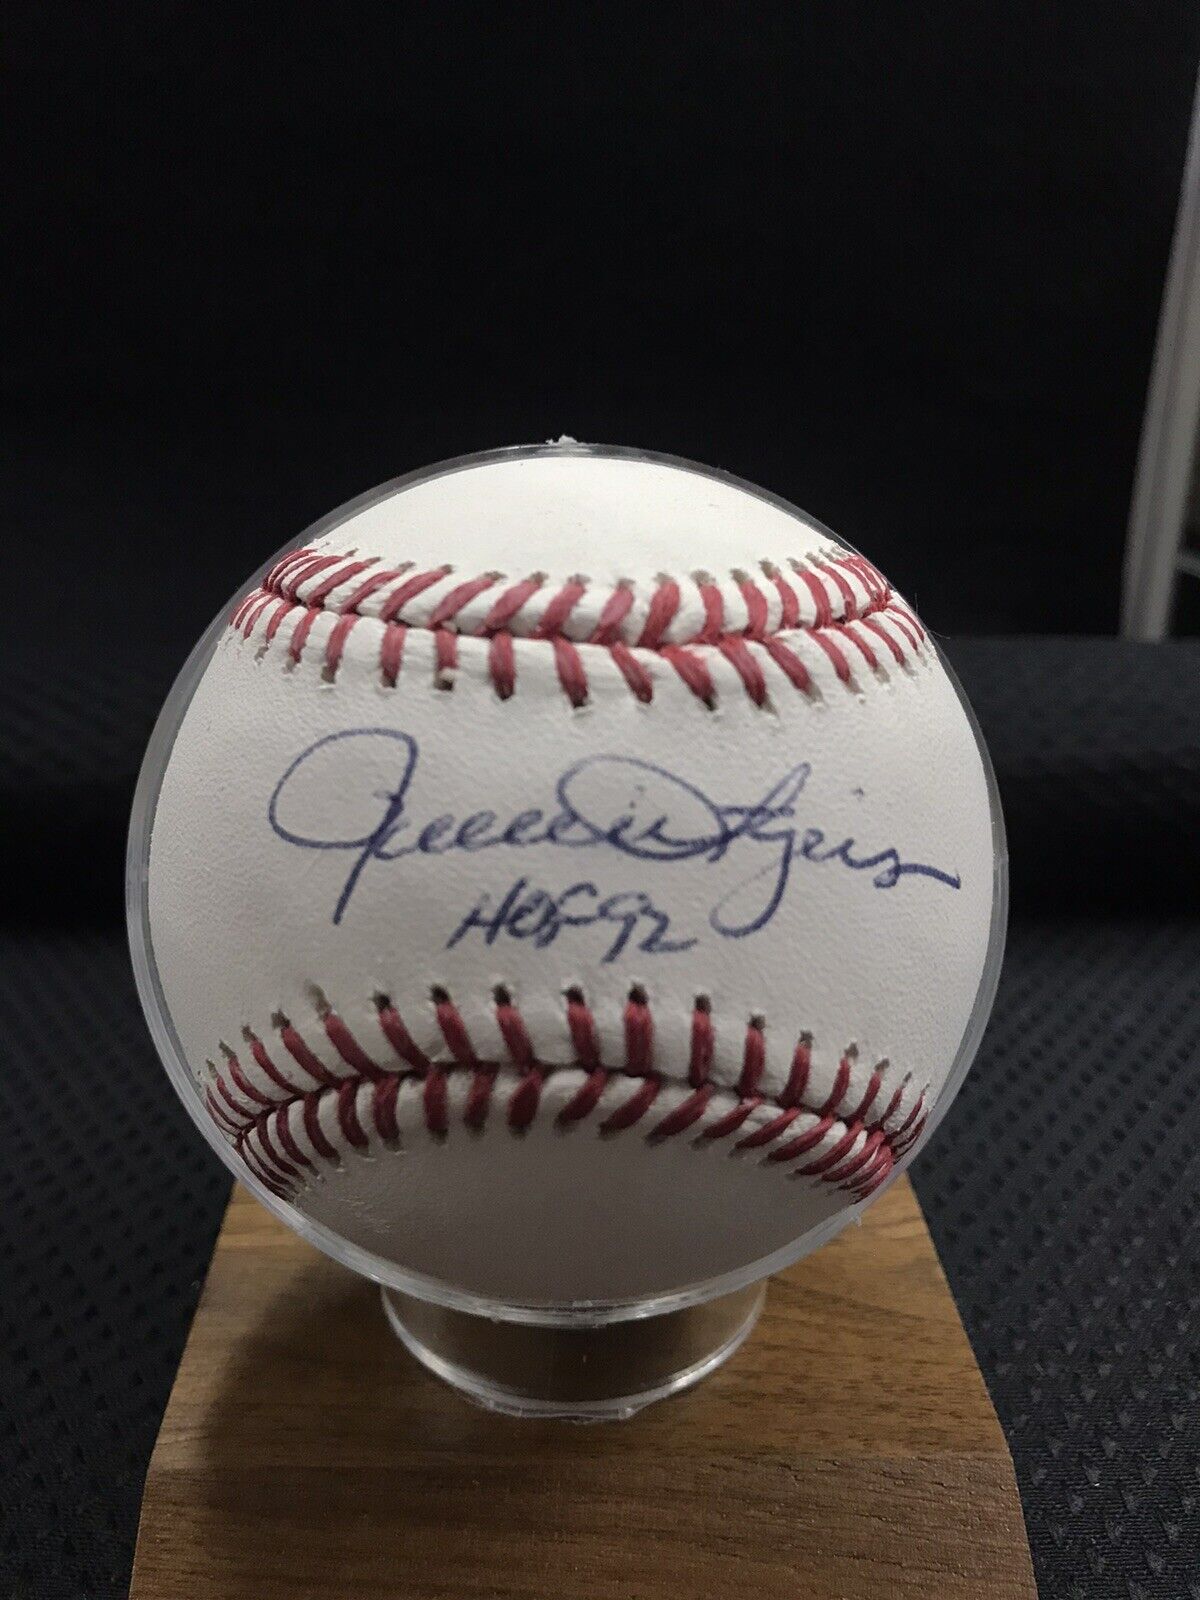 Rollie Fingers Autographed American League Baseball - JSA Certified “HOF’92”